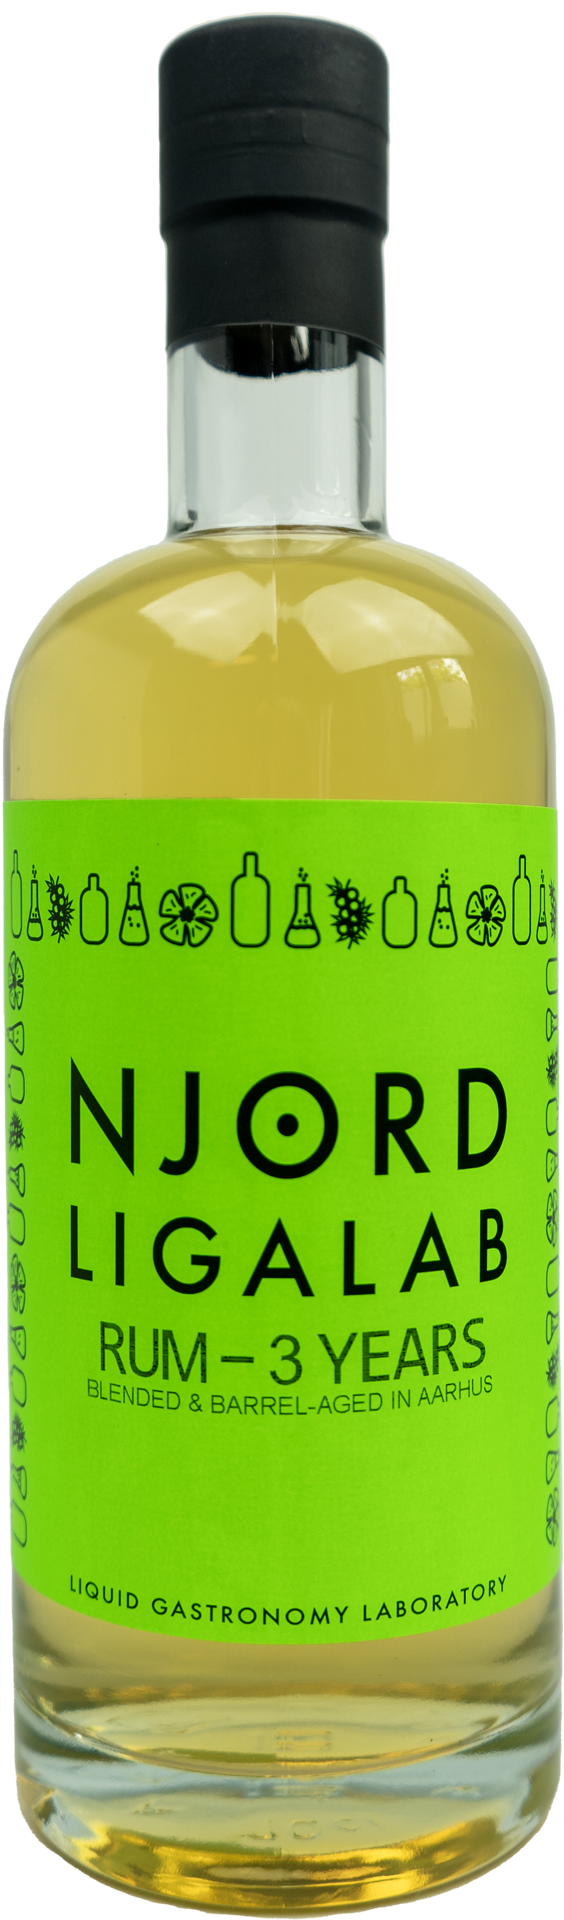 Njord Ligalab Barrel-Aged Rum